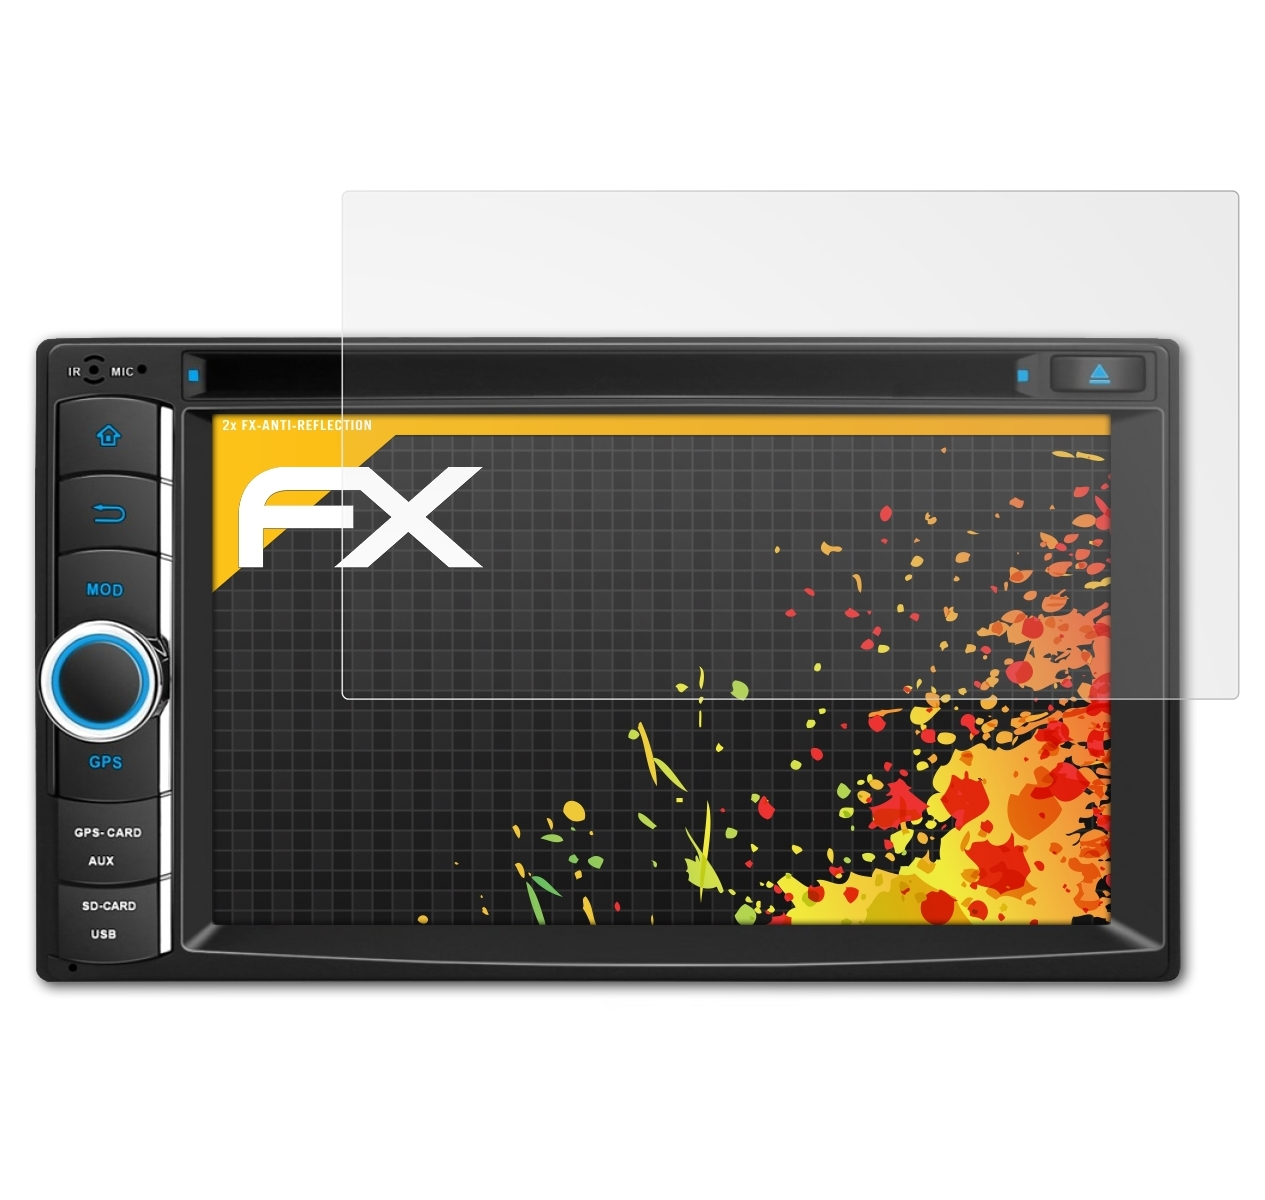 FX-Antireflex 6.2 Inch Displayschutz(für Pumpkin (Universal)) ATFOLIX ND0279B 2x